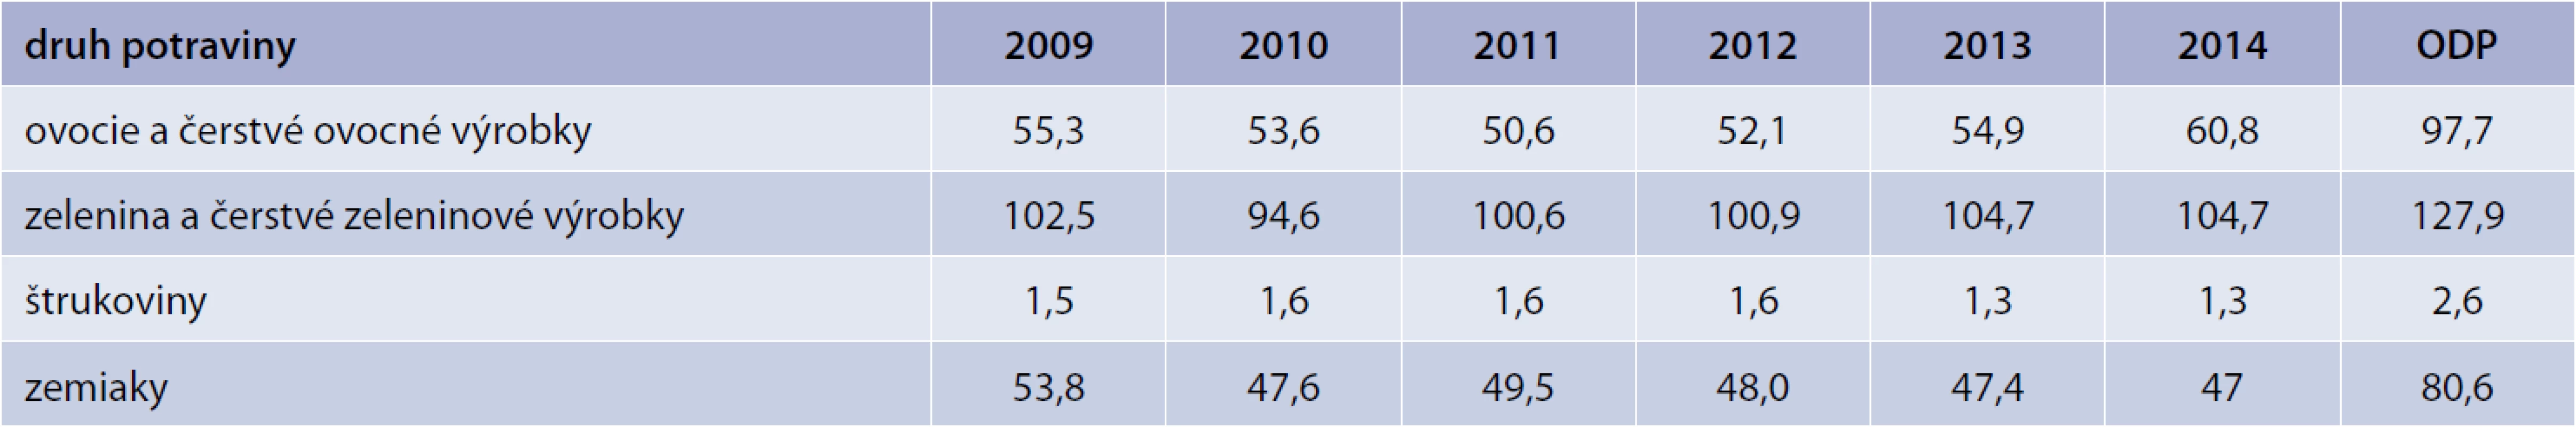 Vývoj spotreby ovocia, zeleniny, strukovín a zemiakov v kg na obyvateľa za roky 2009–2014 v SR podľa Štatistického úradu SR. Upravené podľa [9]